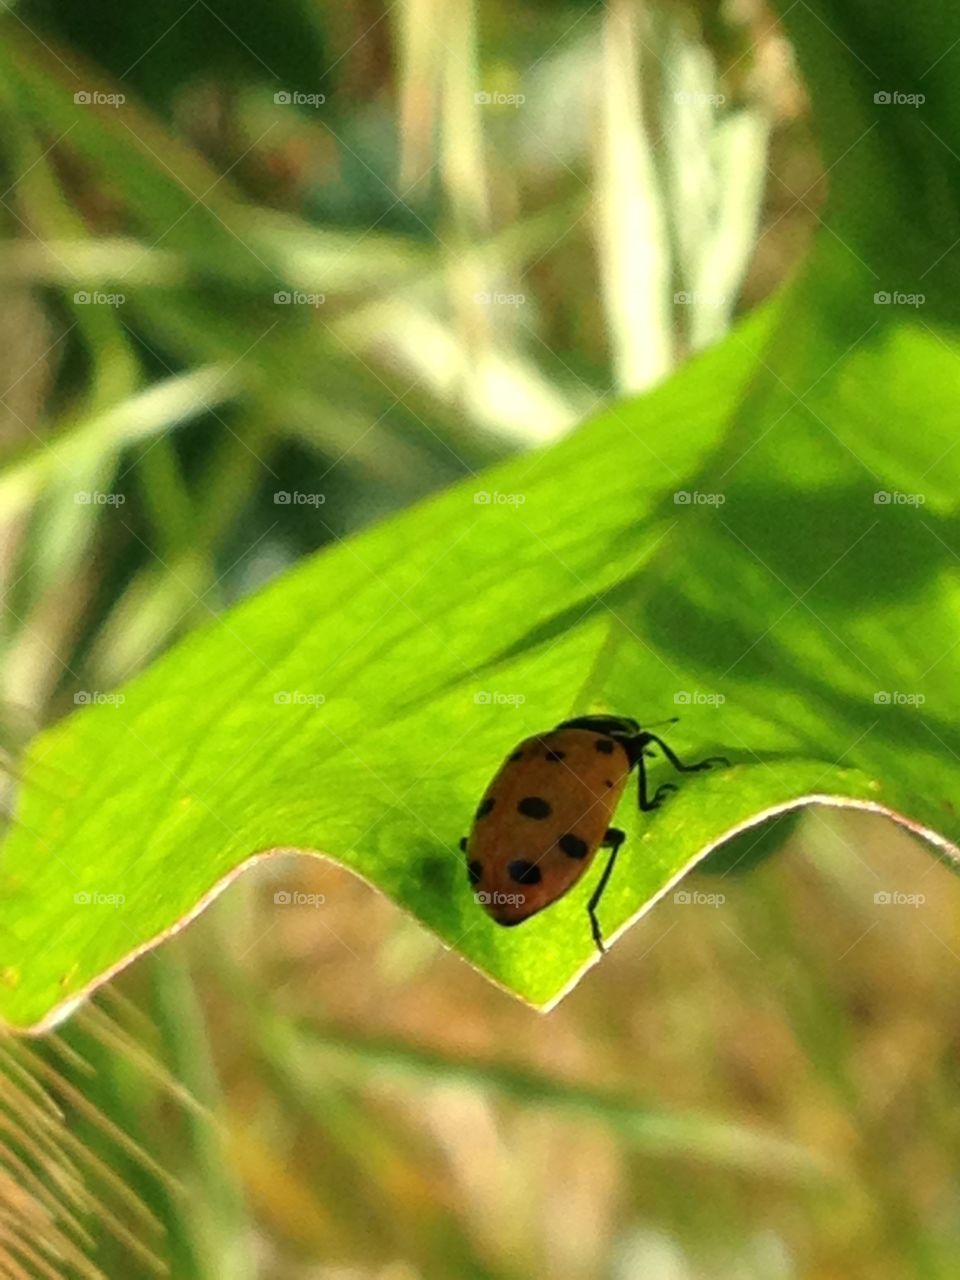 Ladybug on underside of leaf